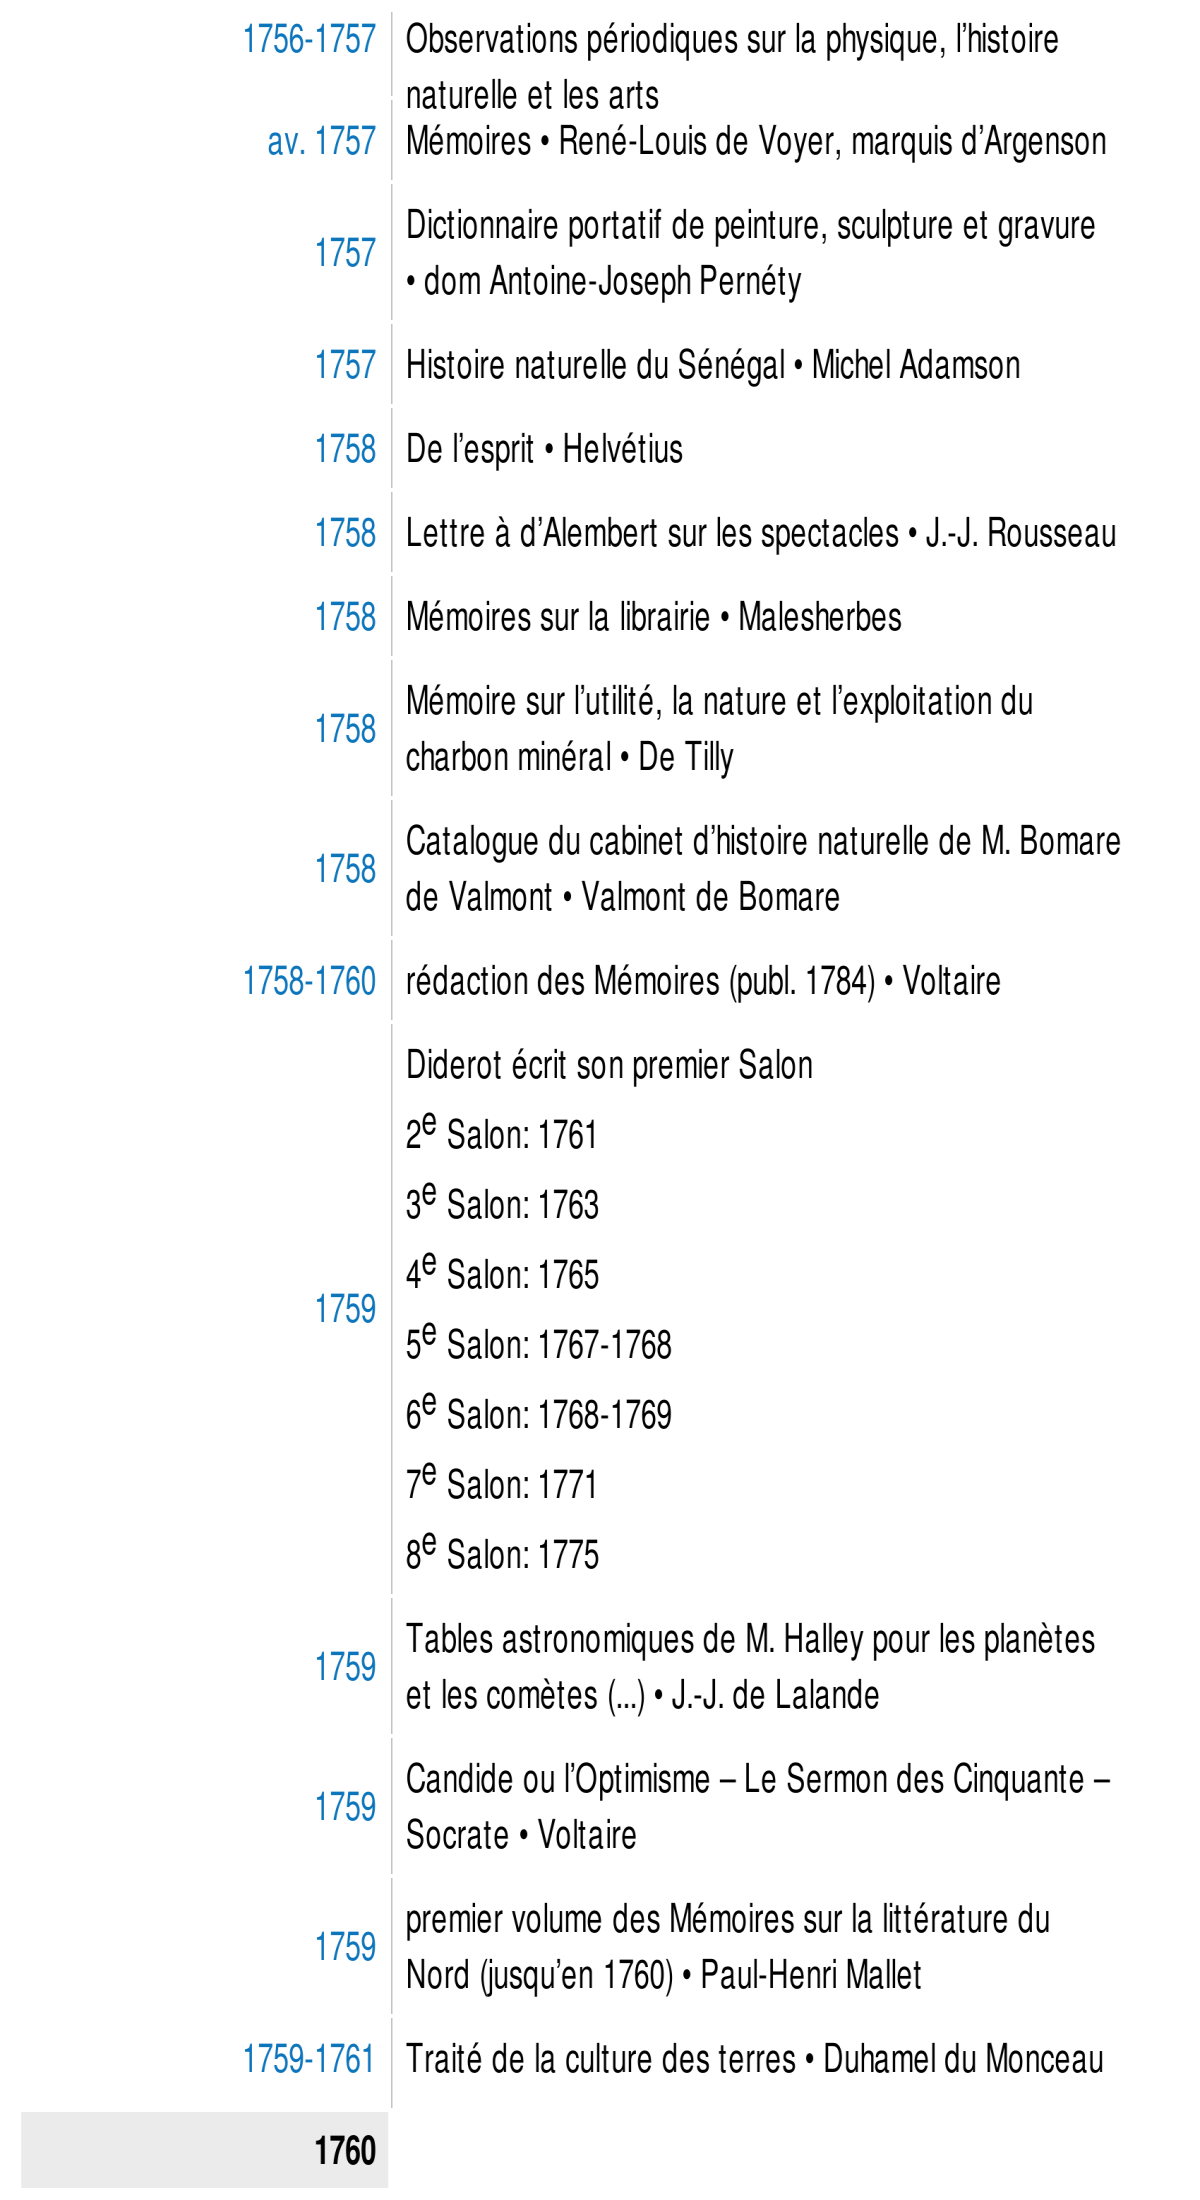 Prévisualisation du document 1753

Lettre sur la musique française o J.